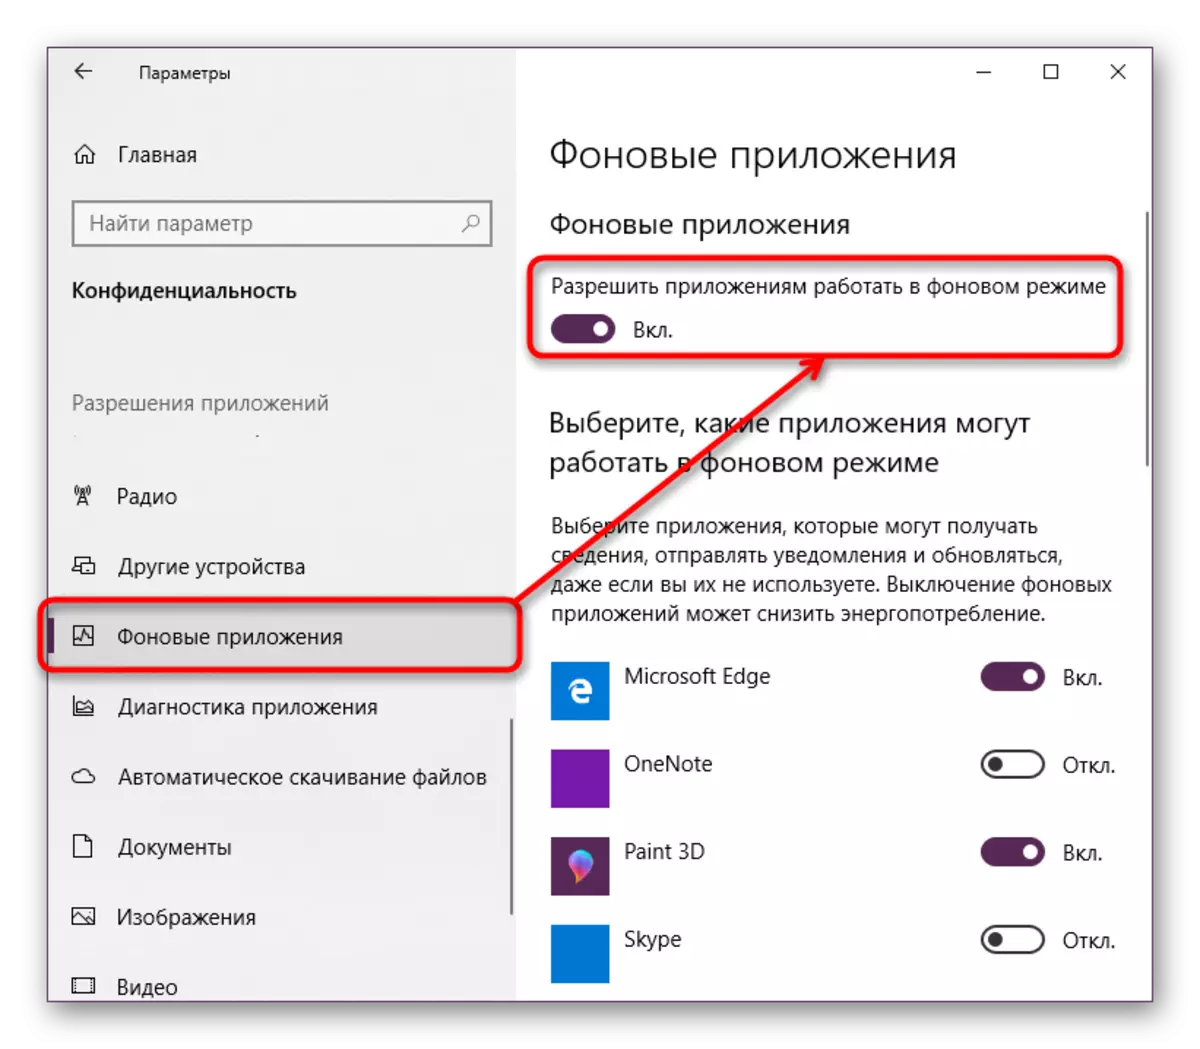 Dezactivați aplicațiile din fundal în parametrii Windows 10